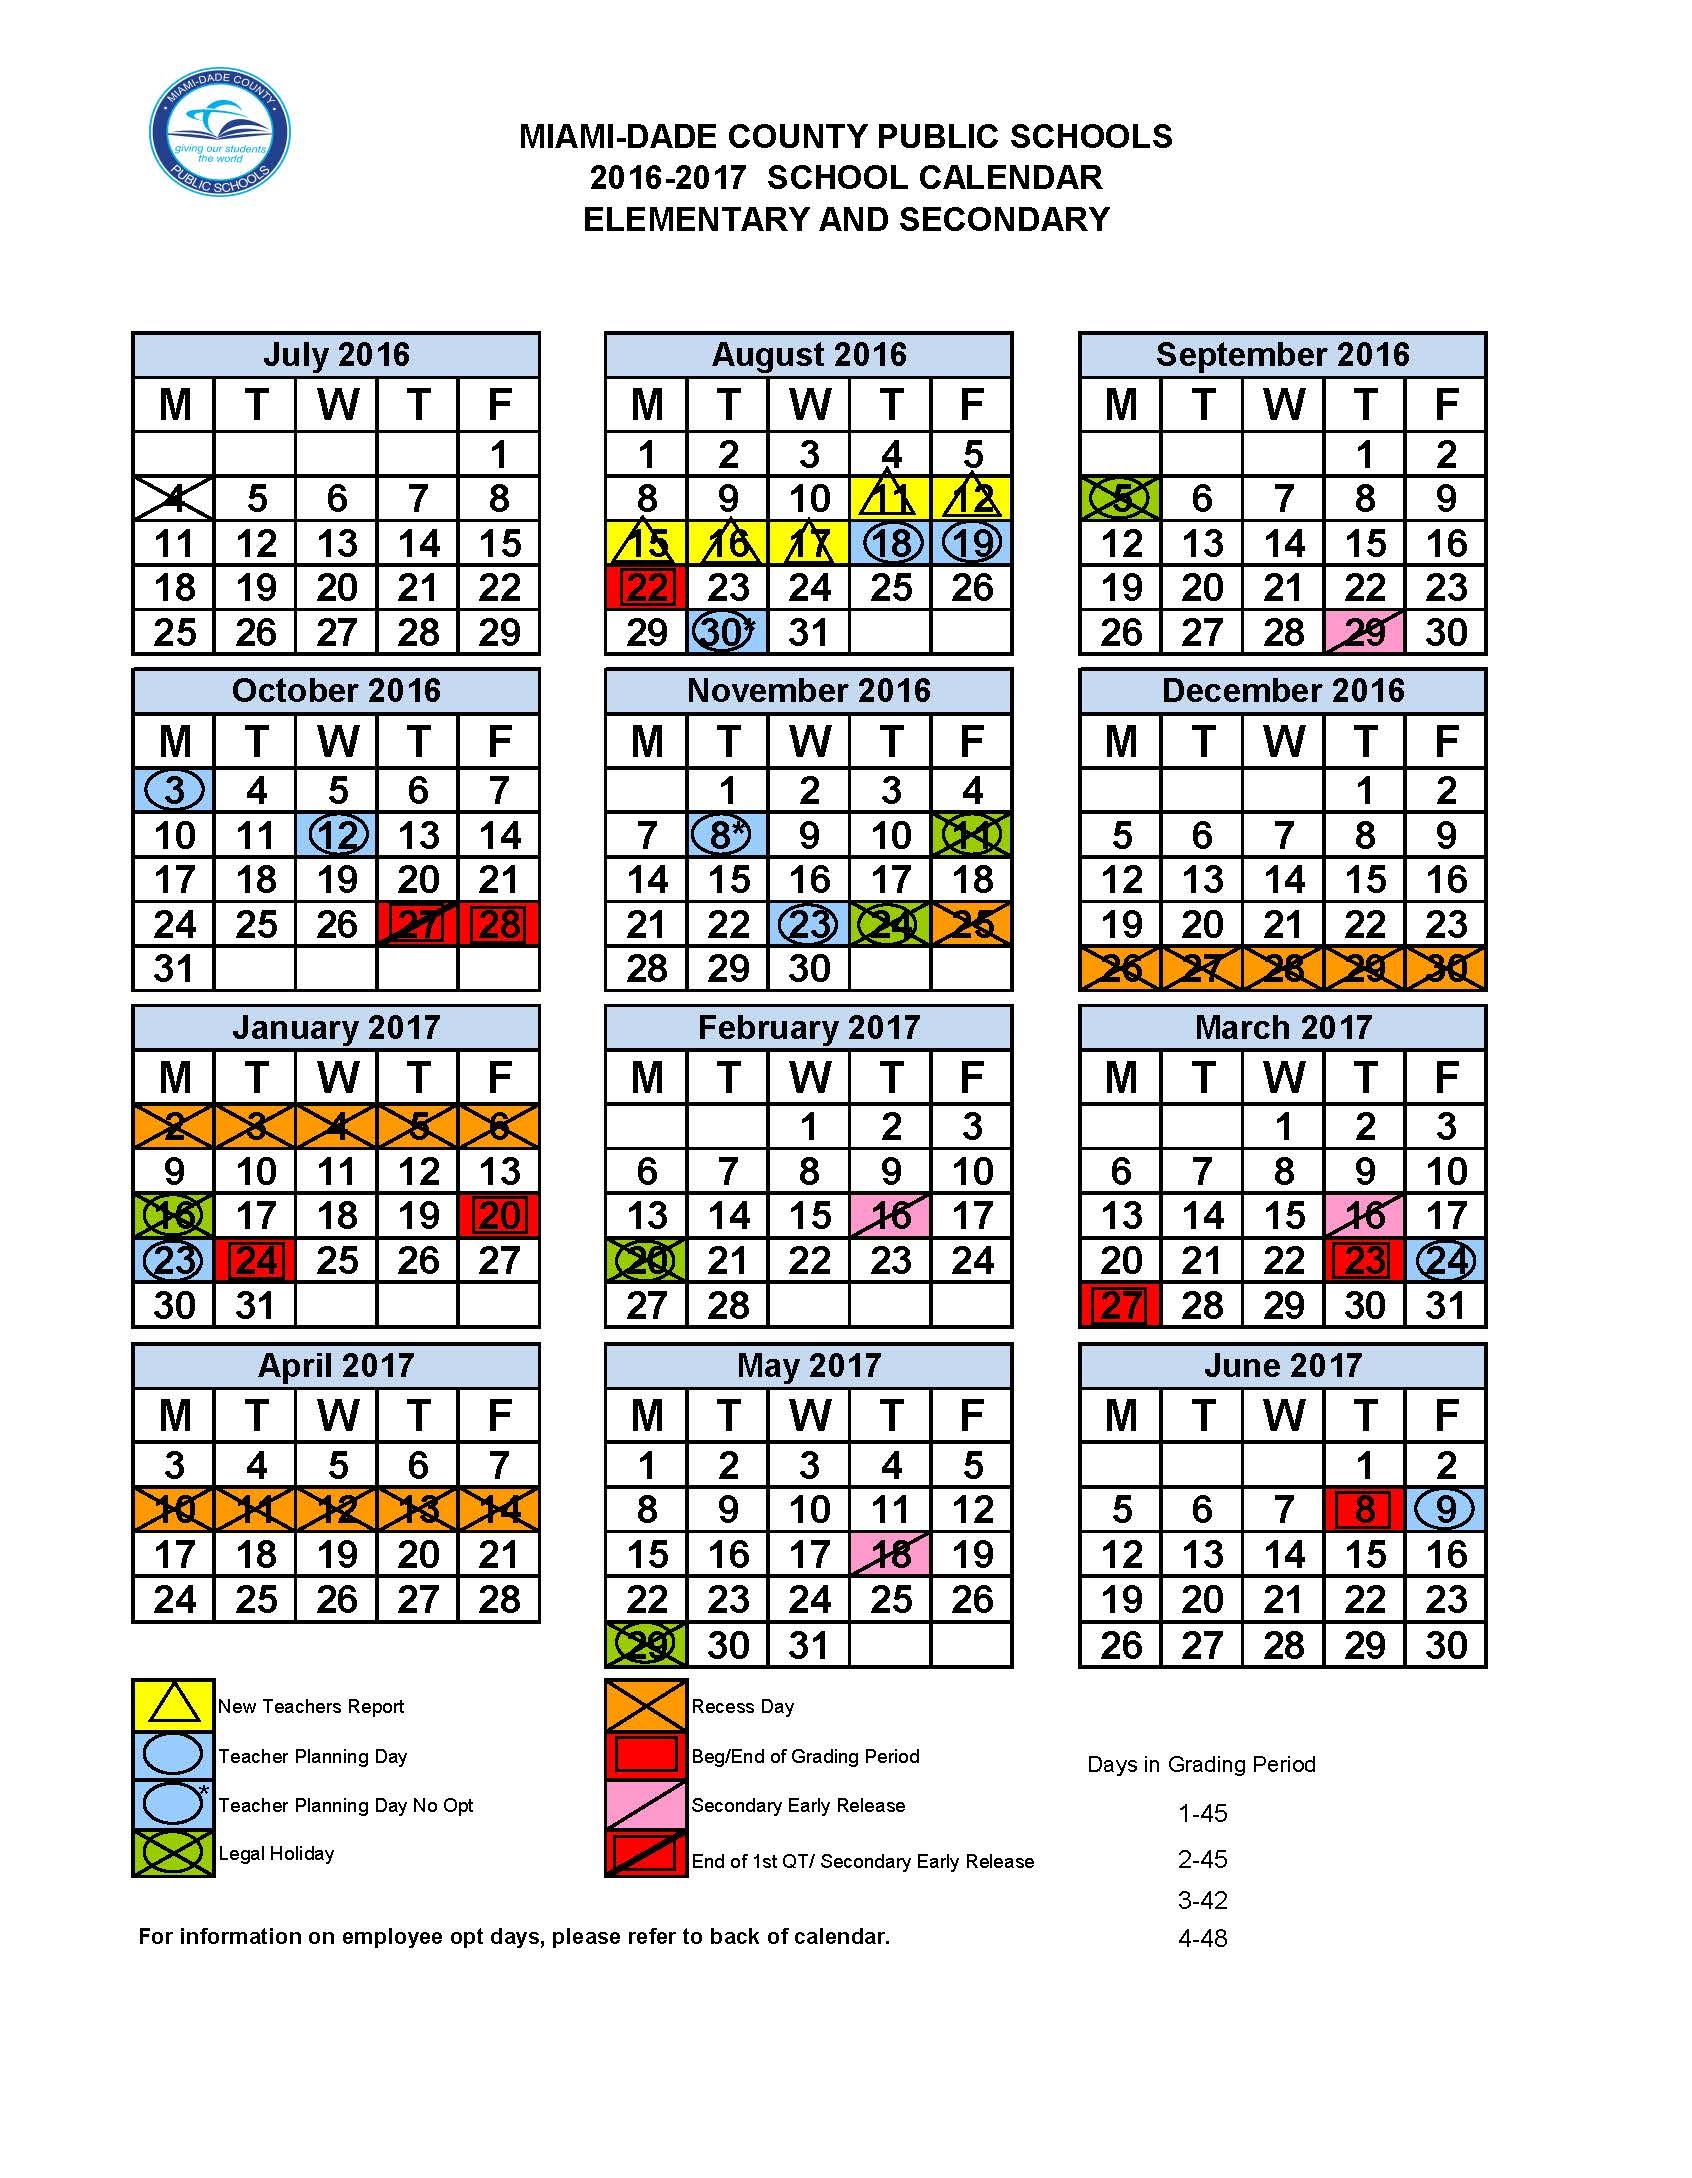 mdps-calendar-customize-and-print